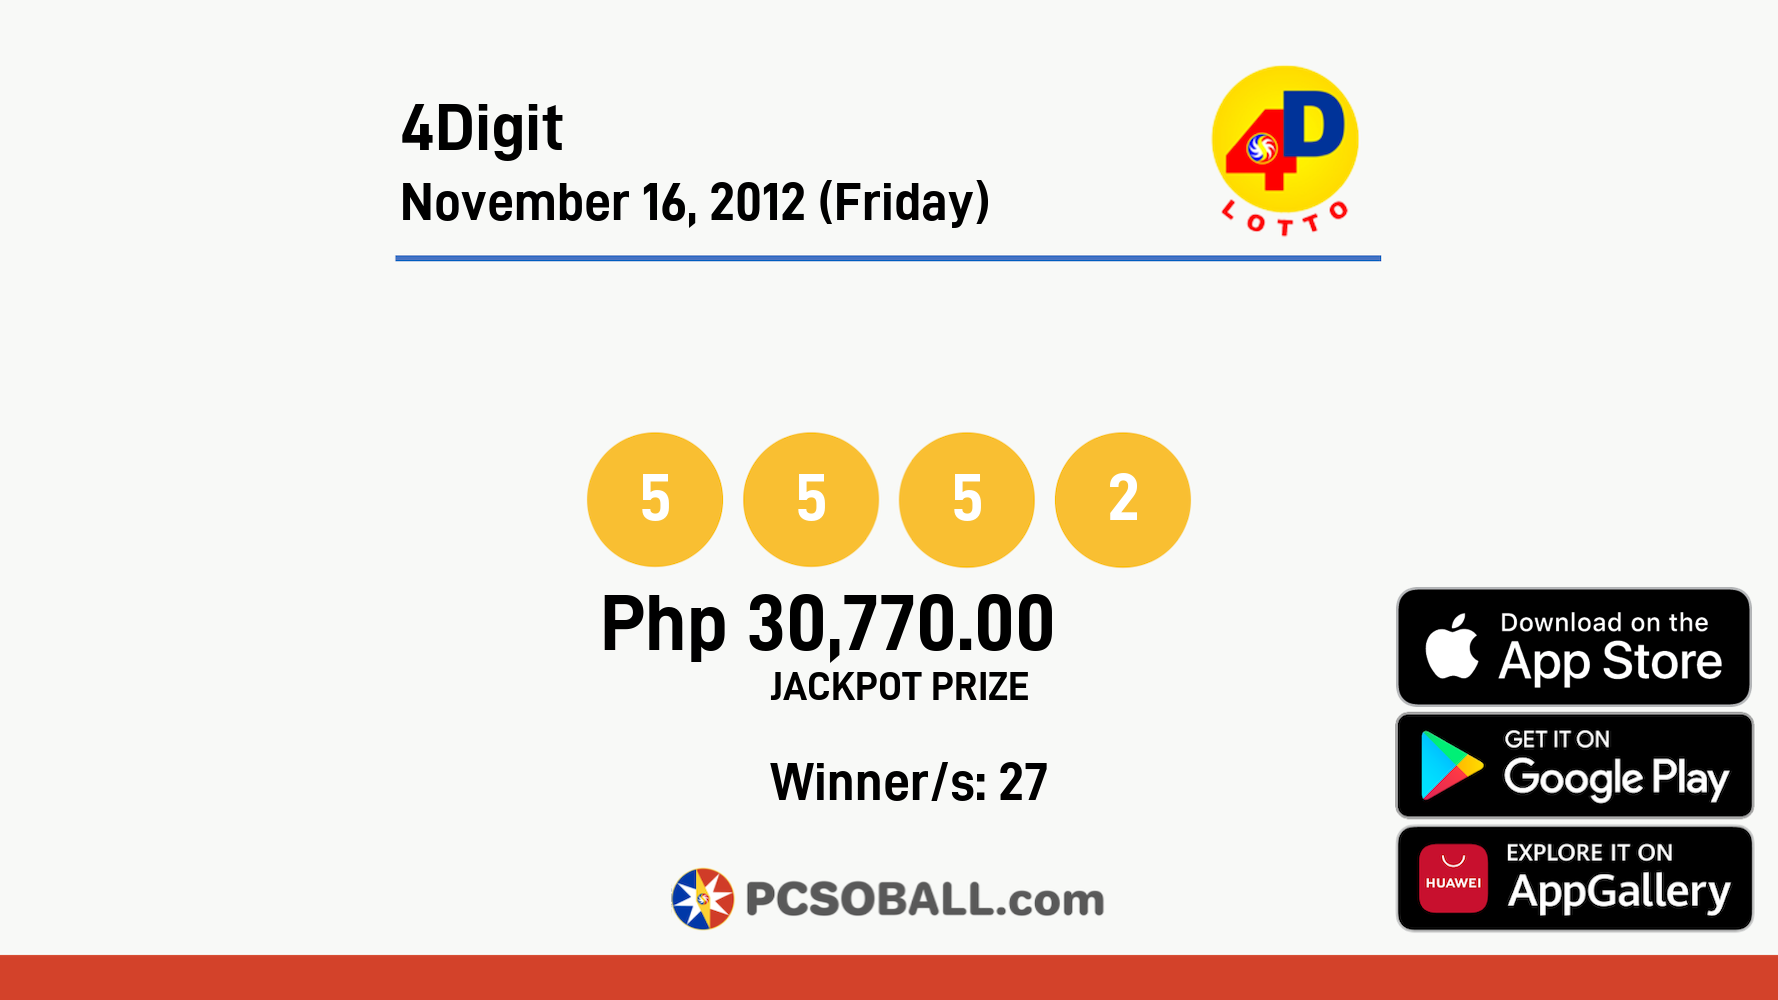 4Digit November 16, 2012 (Friday) Result